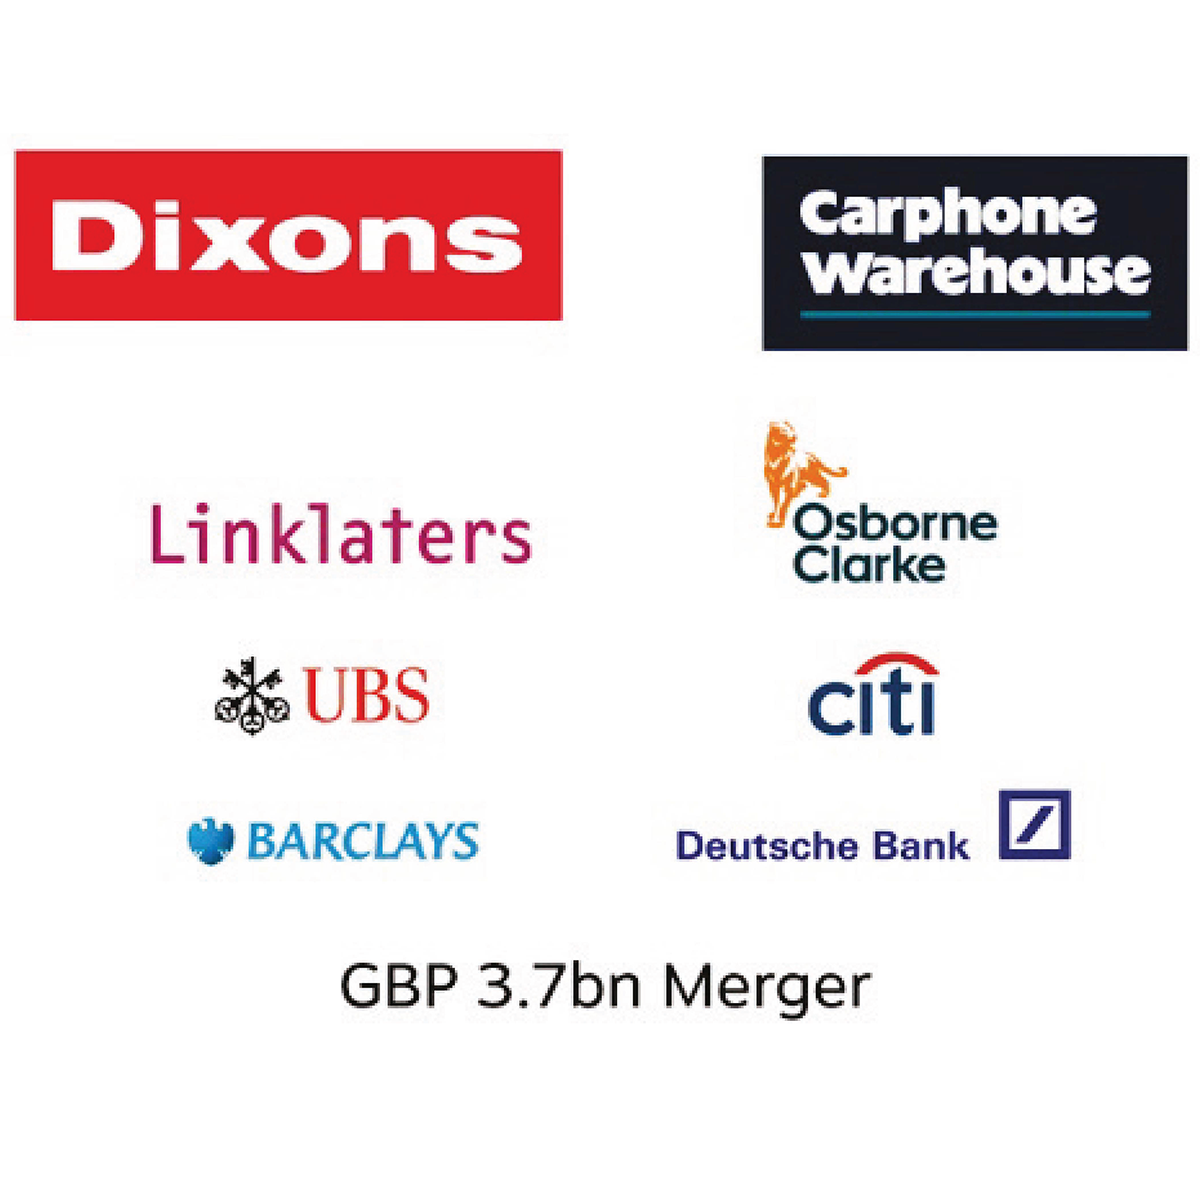 Dixons Carphone plc (now Currys plc)